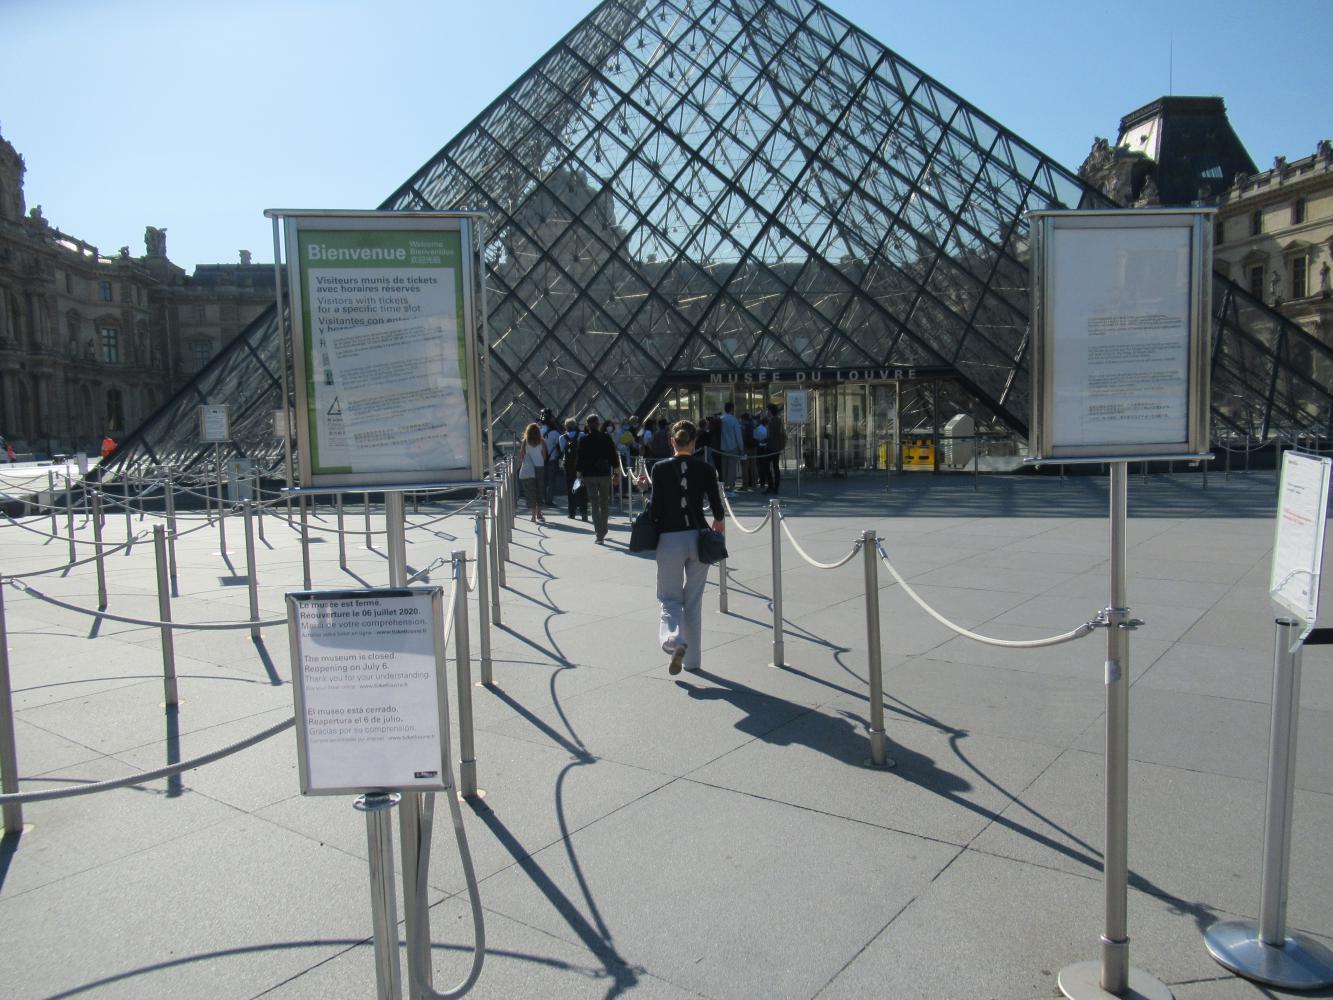 Mit Absperrungen und Anweisungen ist der Weg zum Eingang des Pariser Kunstmuseums Louvre geregelt